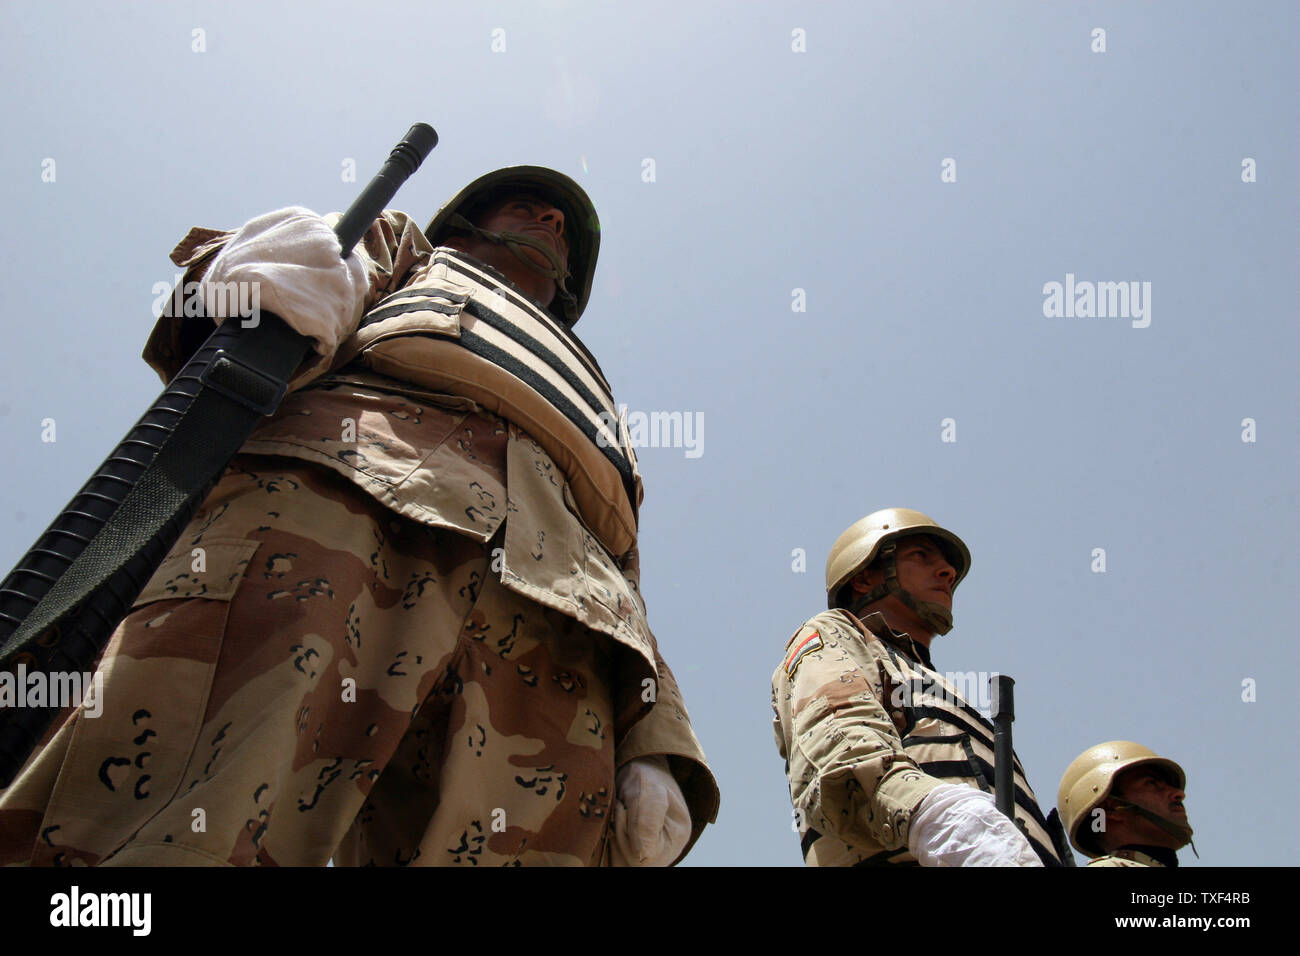 Soldati iracheni nella formazione durante la loro cerimonia di laurea presso una base militare vicino a Taji, 10 chilometri a nord di Bagdad il 10 luglio 2008. Questo è il più recente gruppo di soldati iracheni a laurearsi dopo essere stato addestrato dai militari americani. (UPI foto/Ali Jasim) Foto Stock